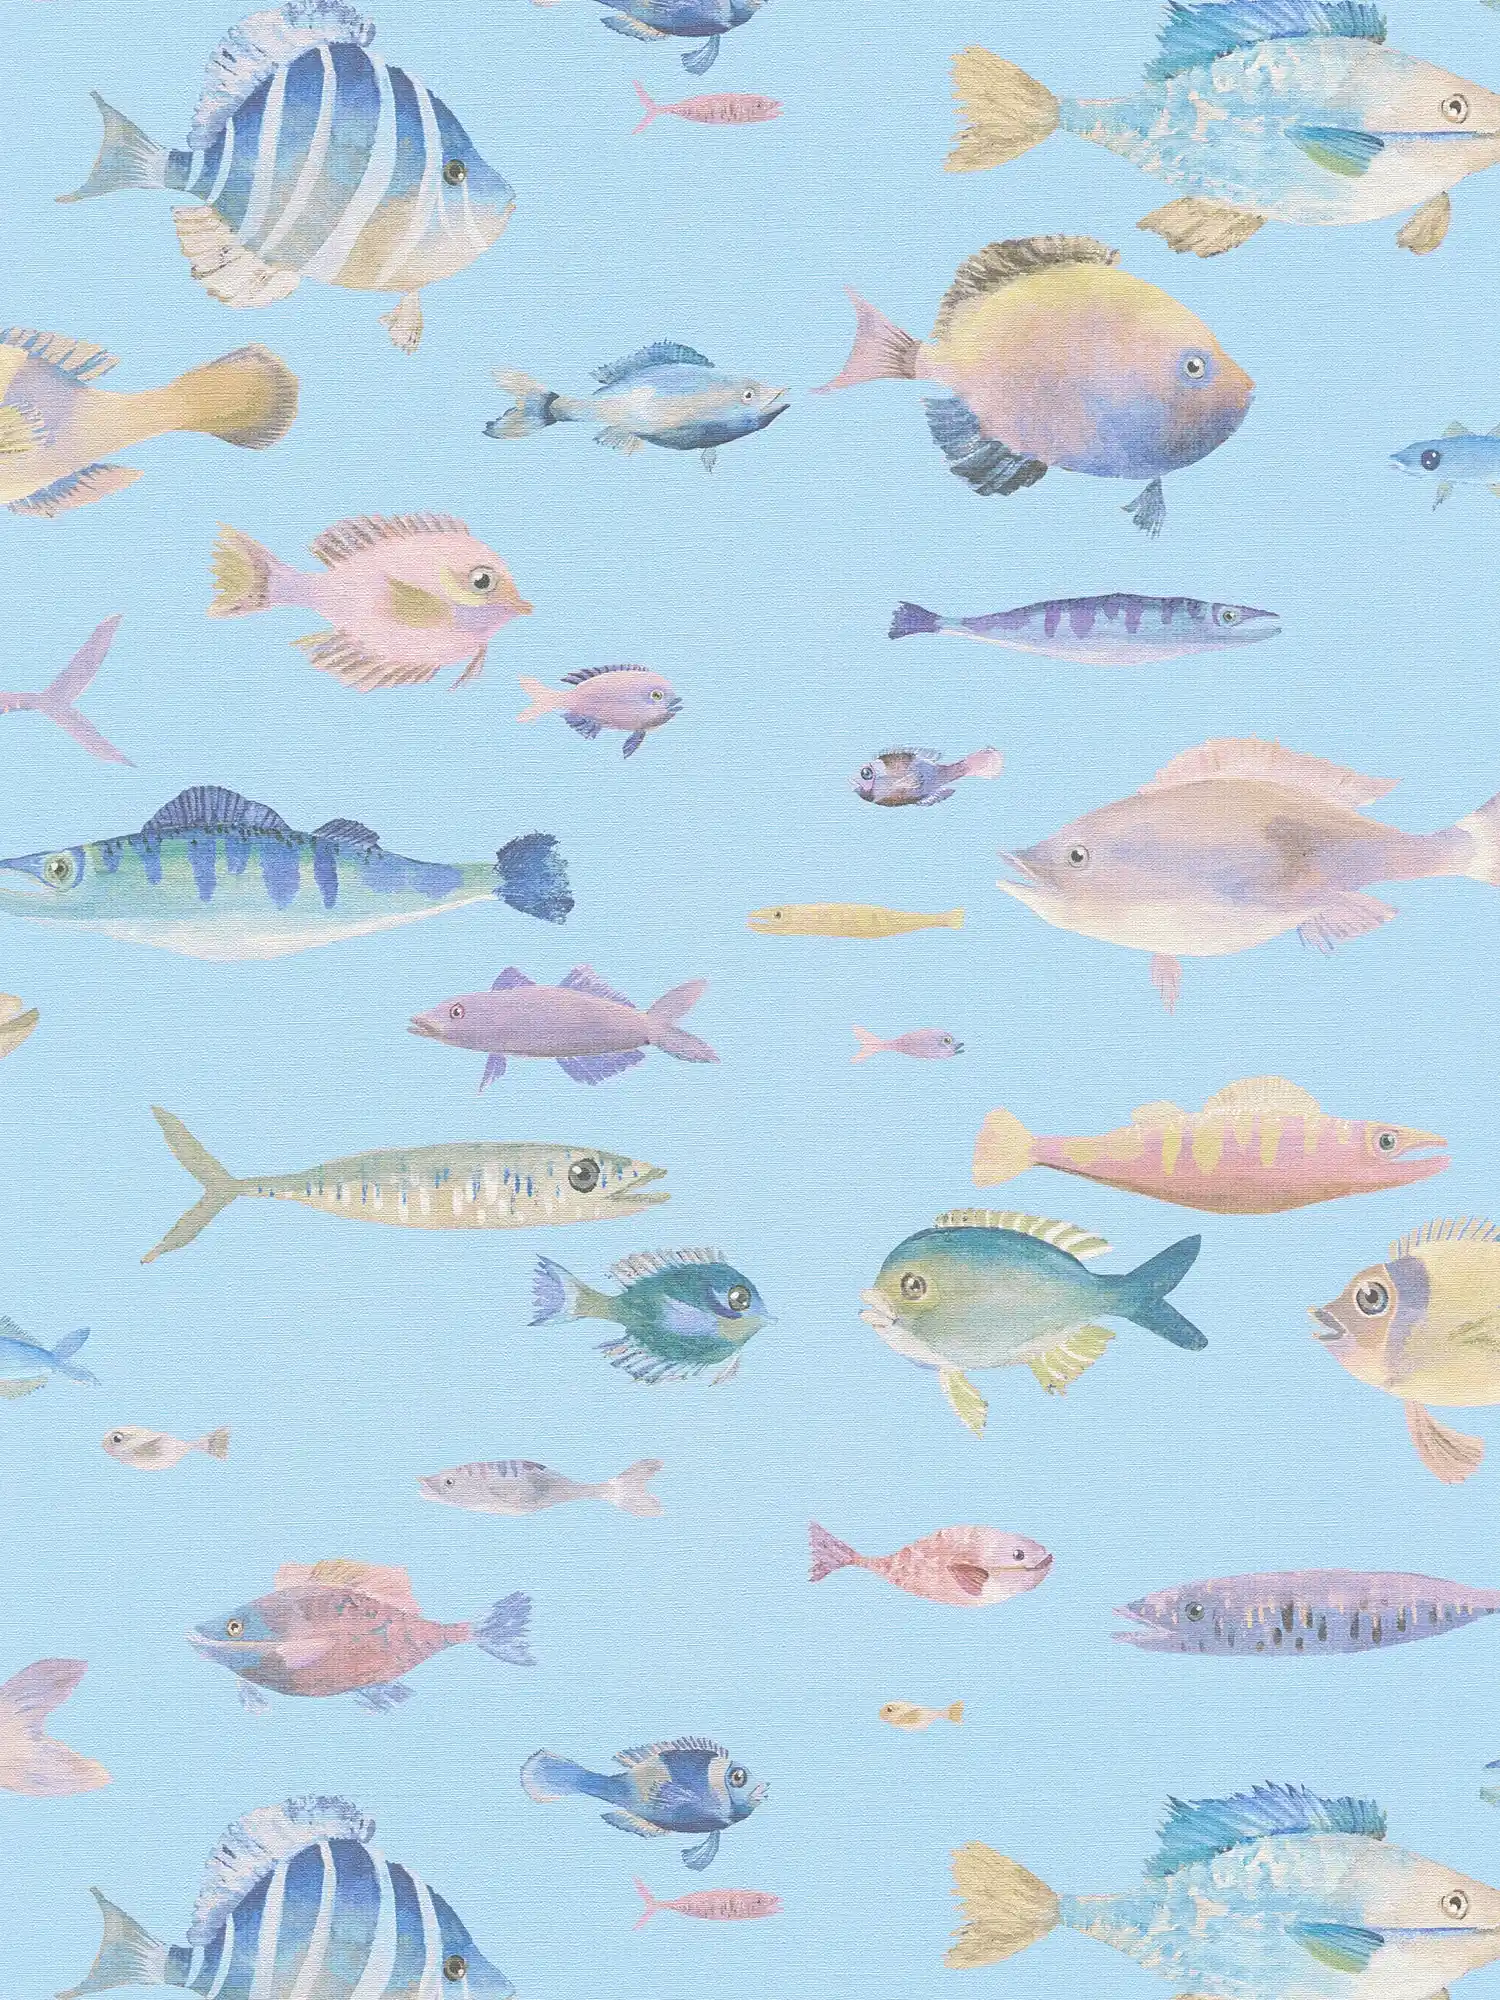 Vliestapete Unterwasserwelt mit Fischen – Türkis, Bunt, Rosa
